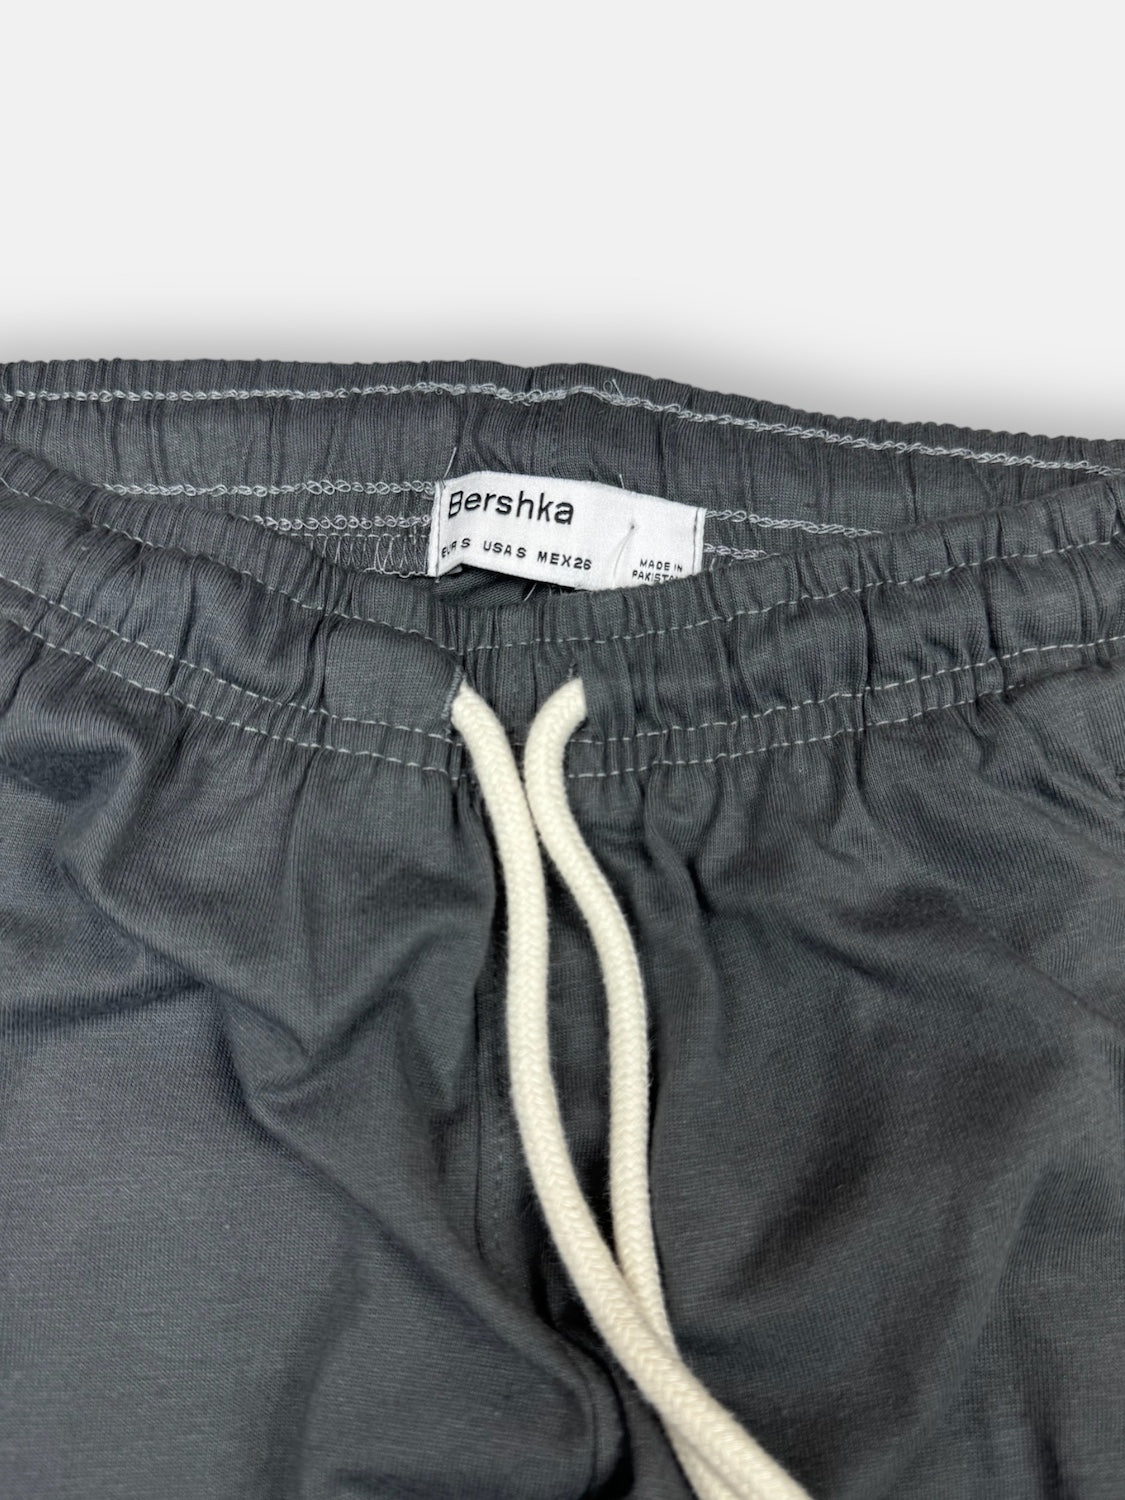 BRSHKA Premium Cotton 3Quater Shorts (Dark Grey)